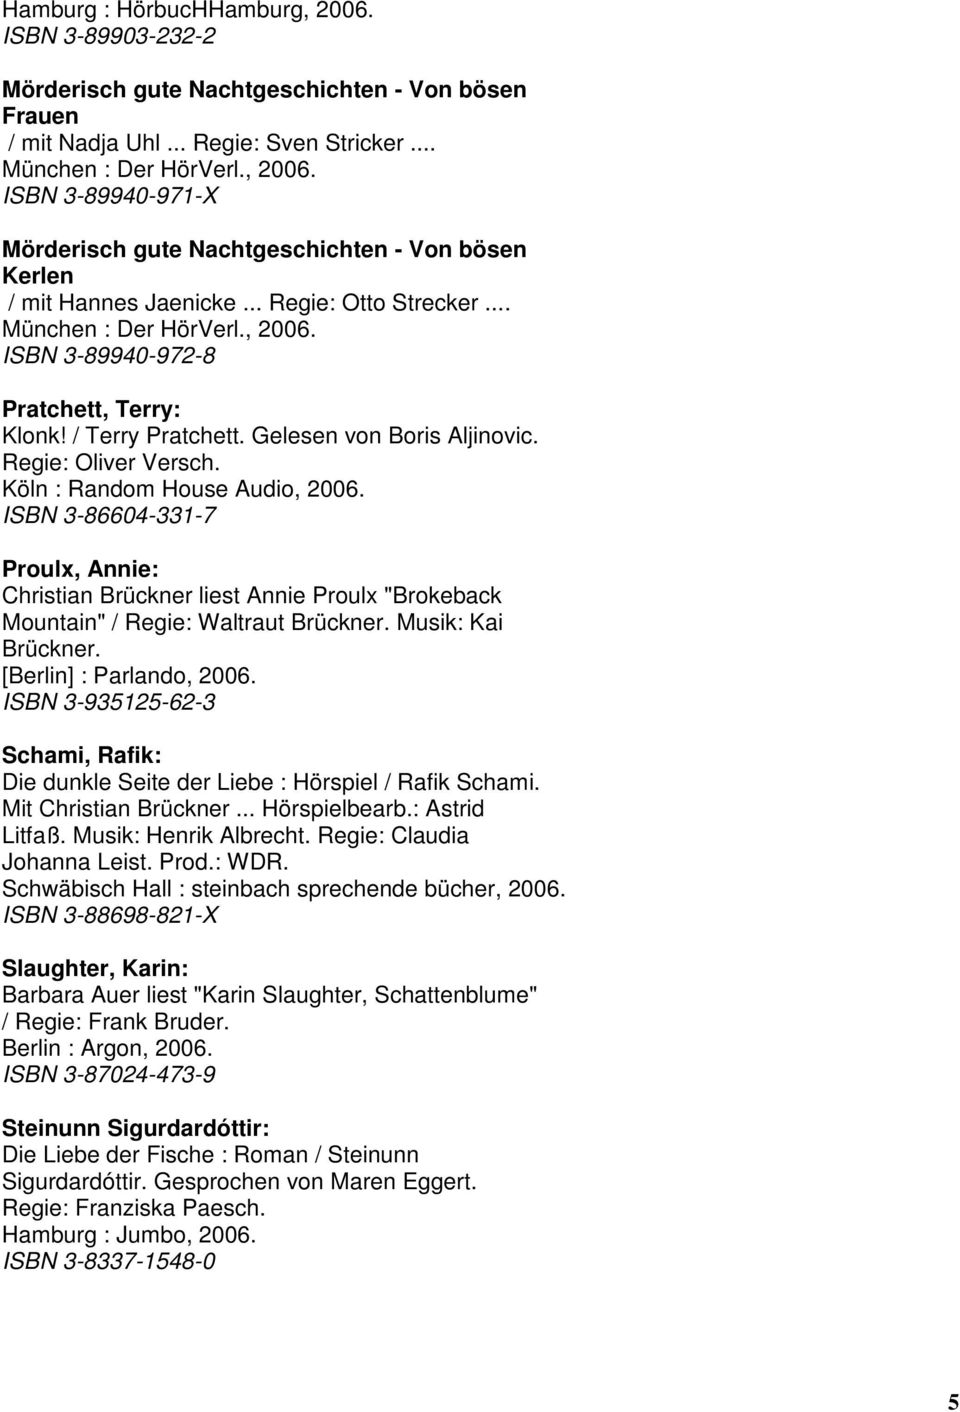 Gelesen von Boris Aljinovic. Regie: Oliver Versch. ISBN 3-86604-331-7 Proulx, Annie: Christian Brückner liest Annie Proulx "Brokeback Mountain" / Regie: Waltraut Brückner. Musik: Kai Brückner.